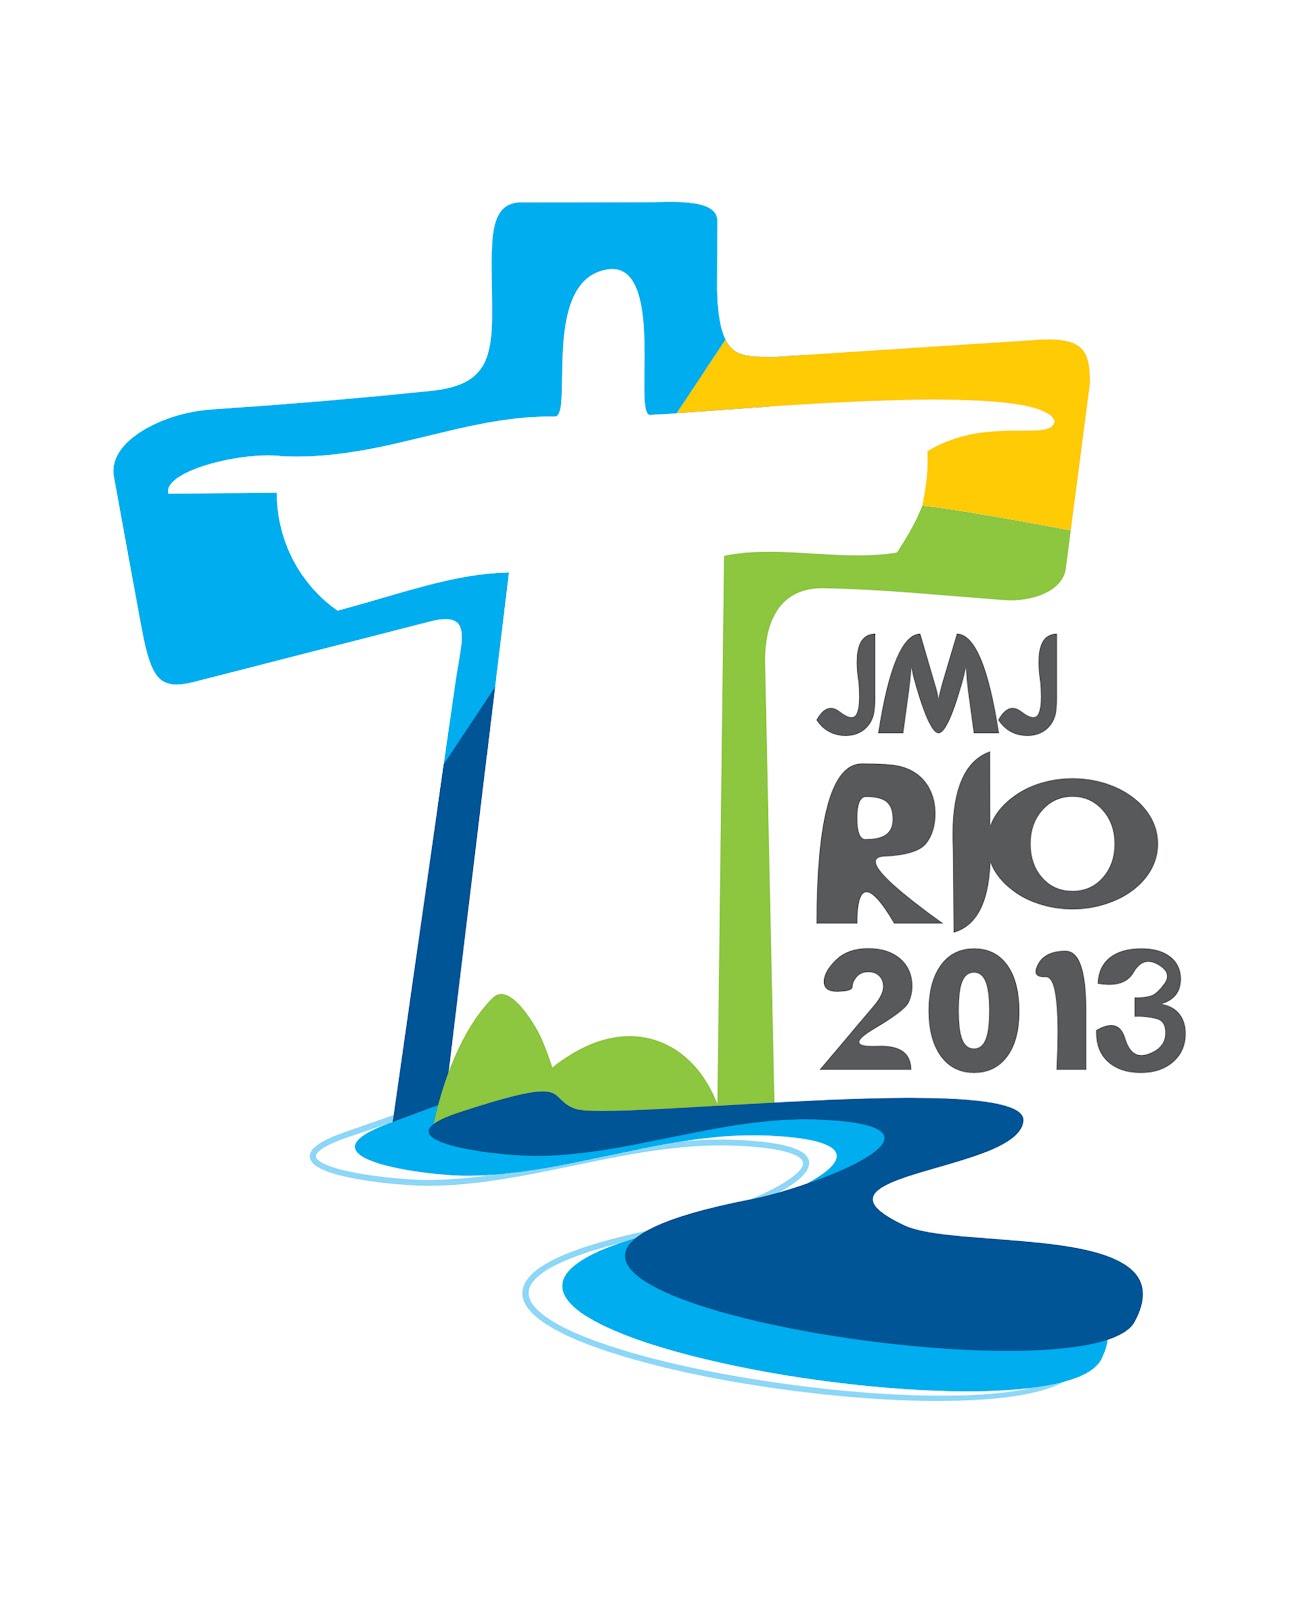 Jmj Rio 2013